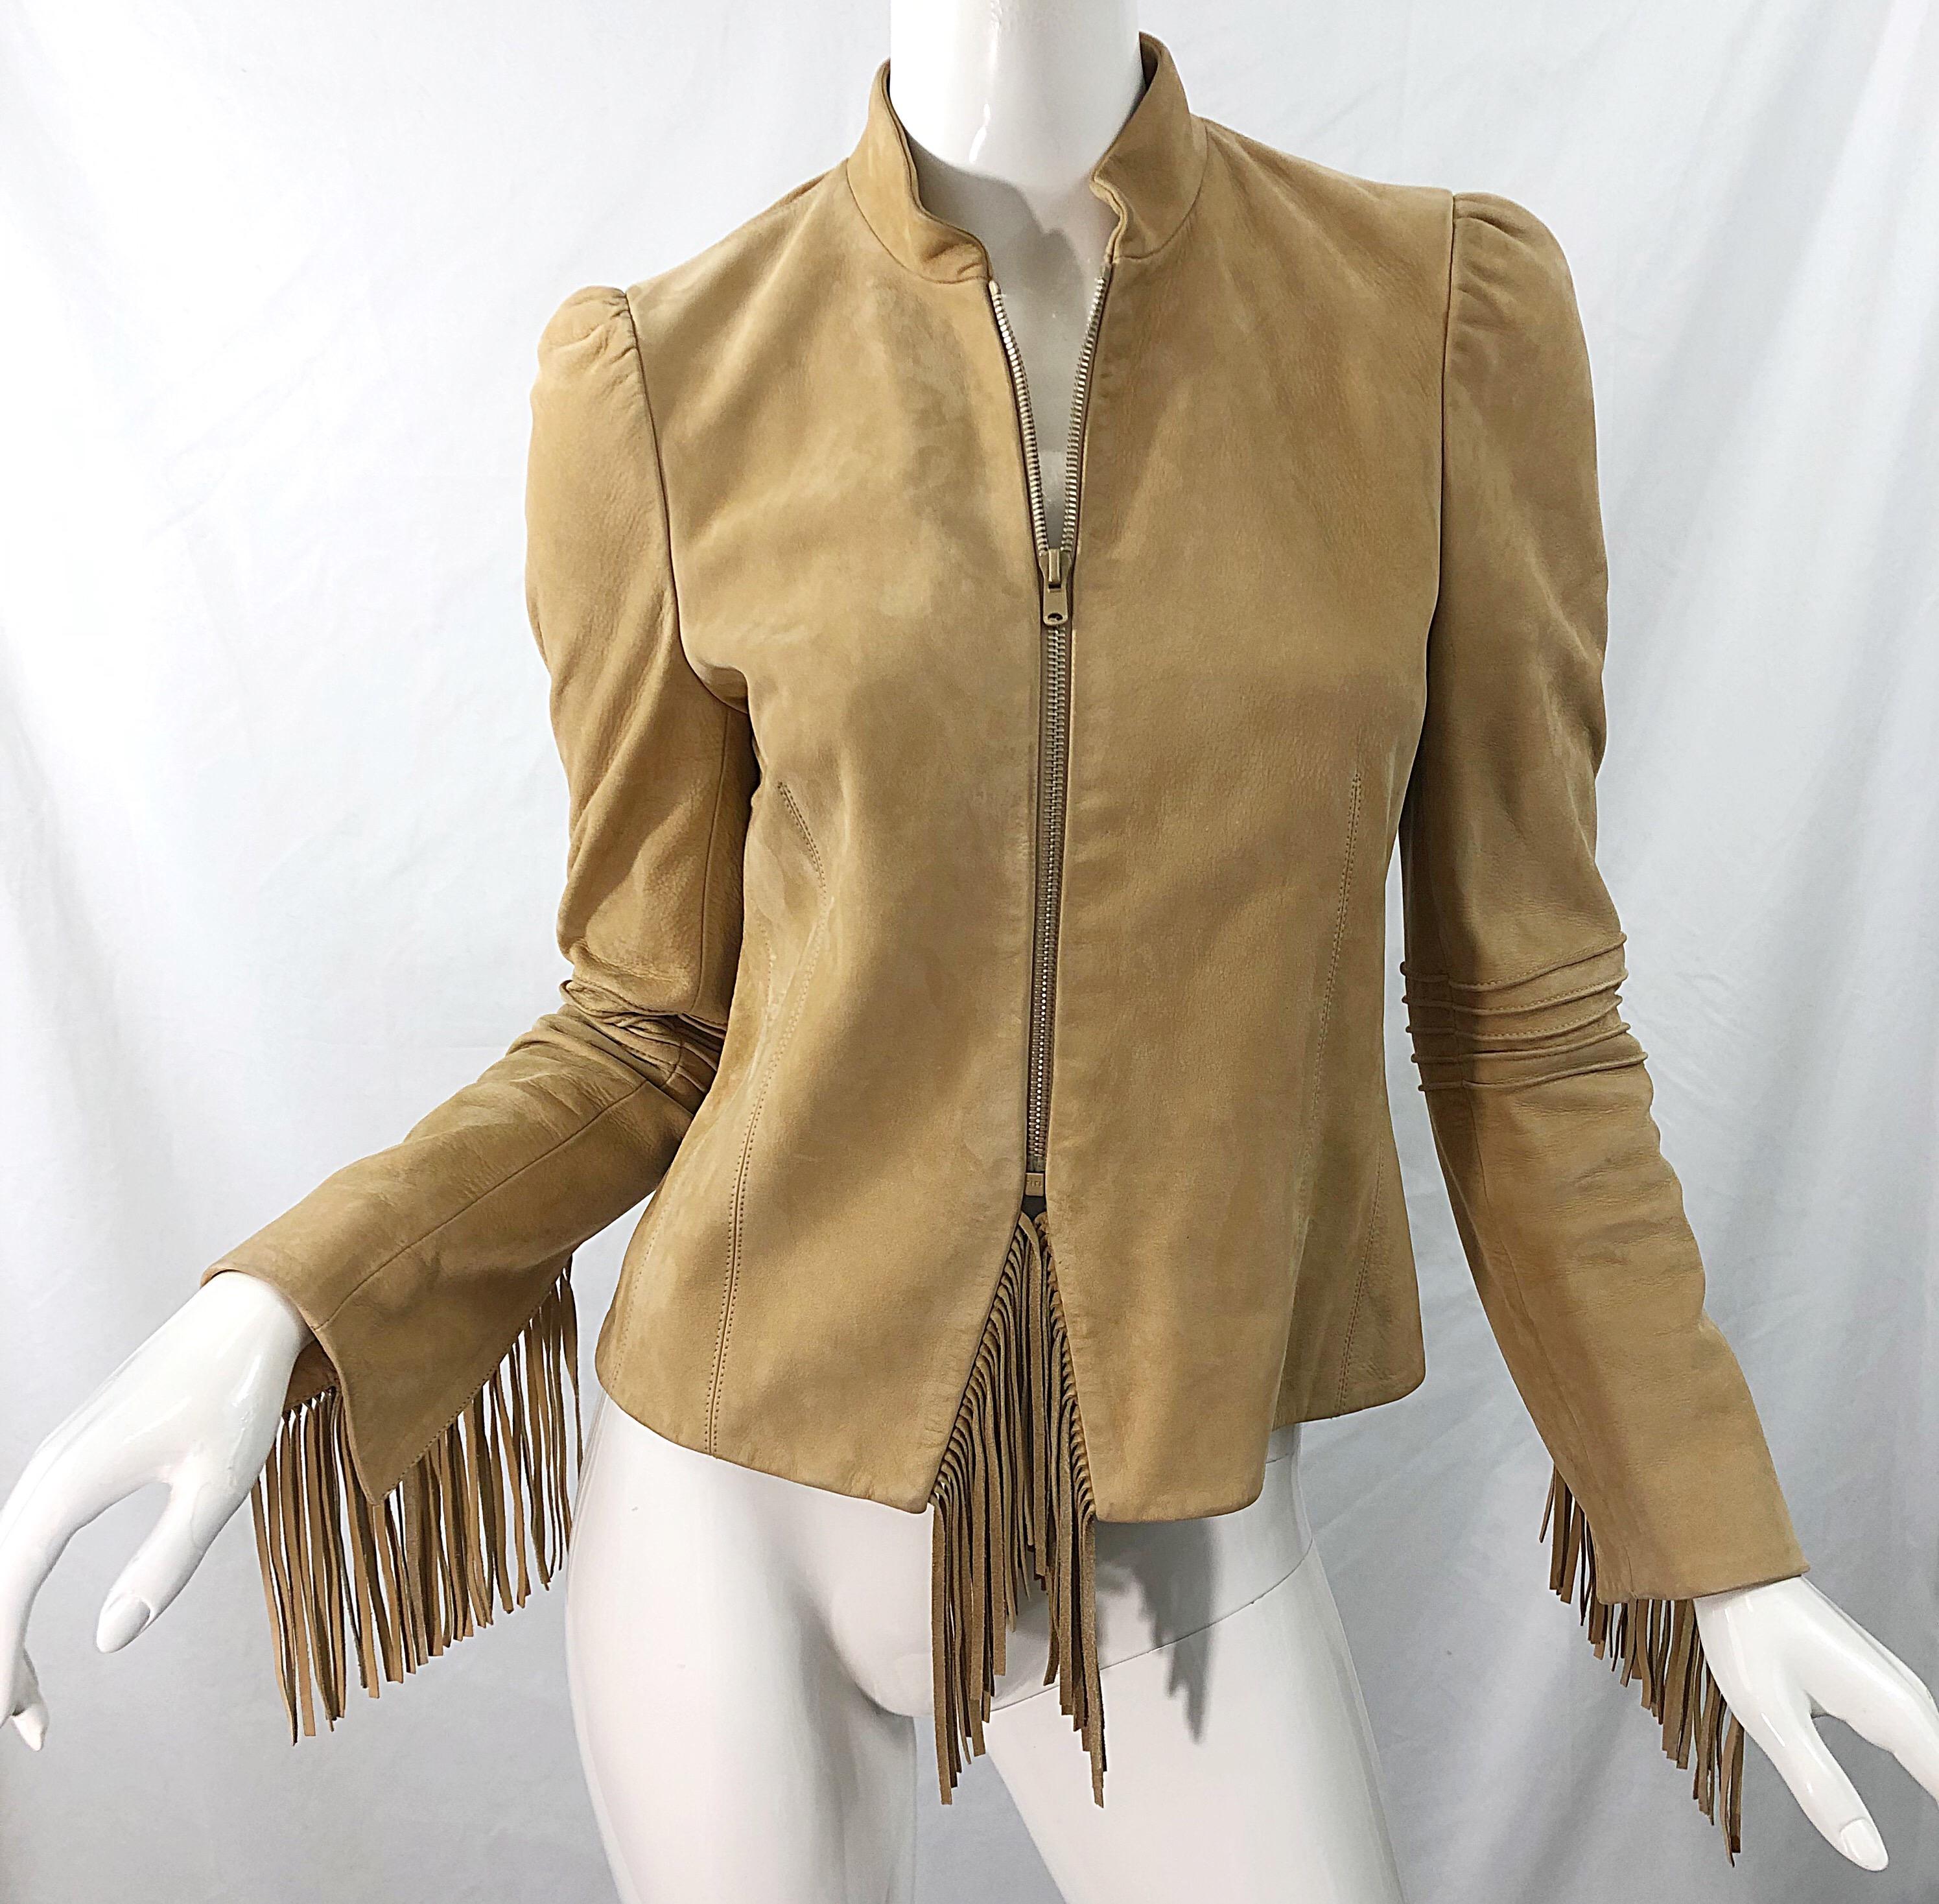 Katayone Adeli 1990s Tan Nubuck Leather Size 4 Fringe Vintage 90s Jacket 1